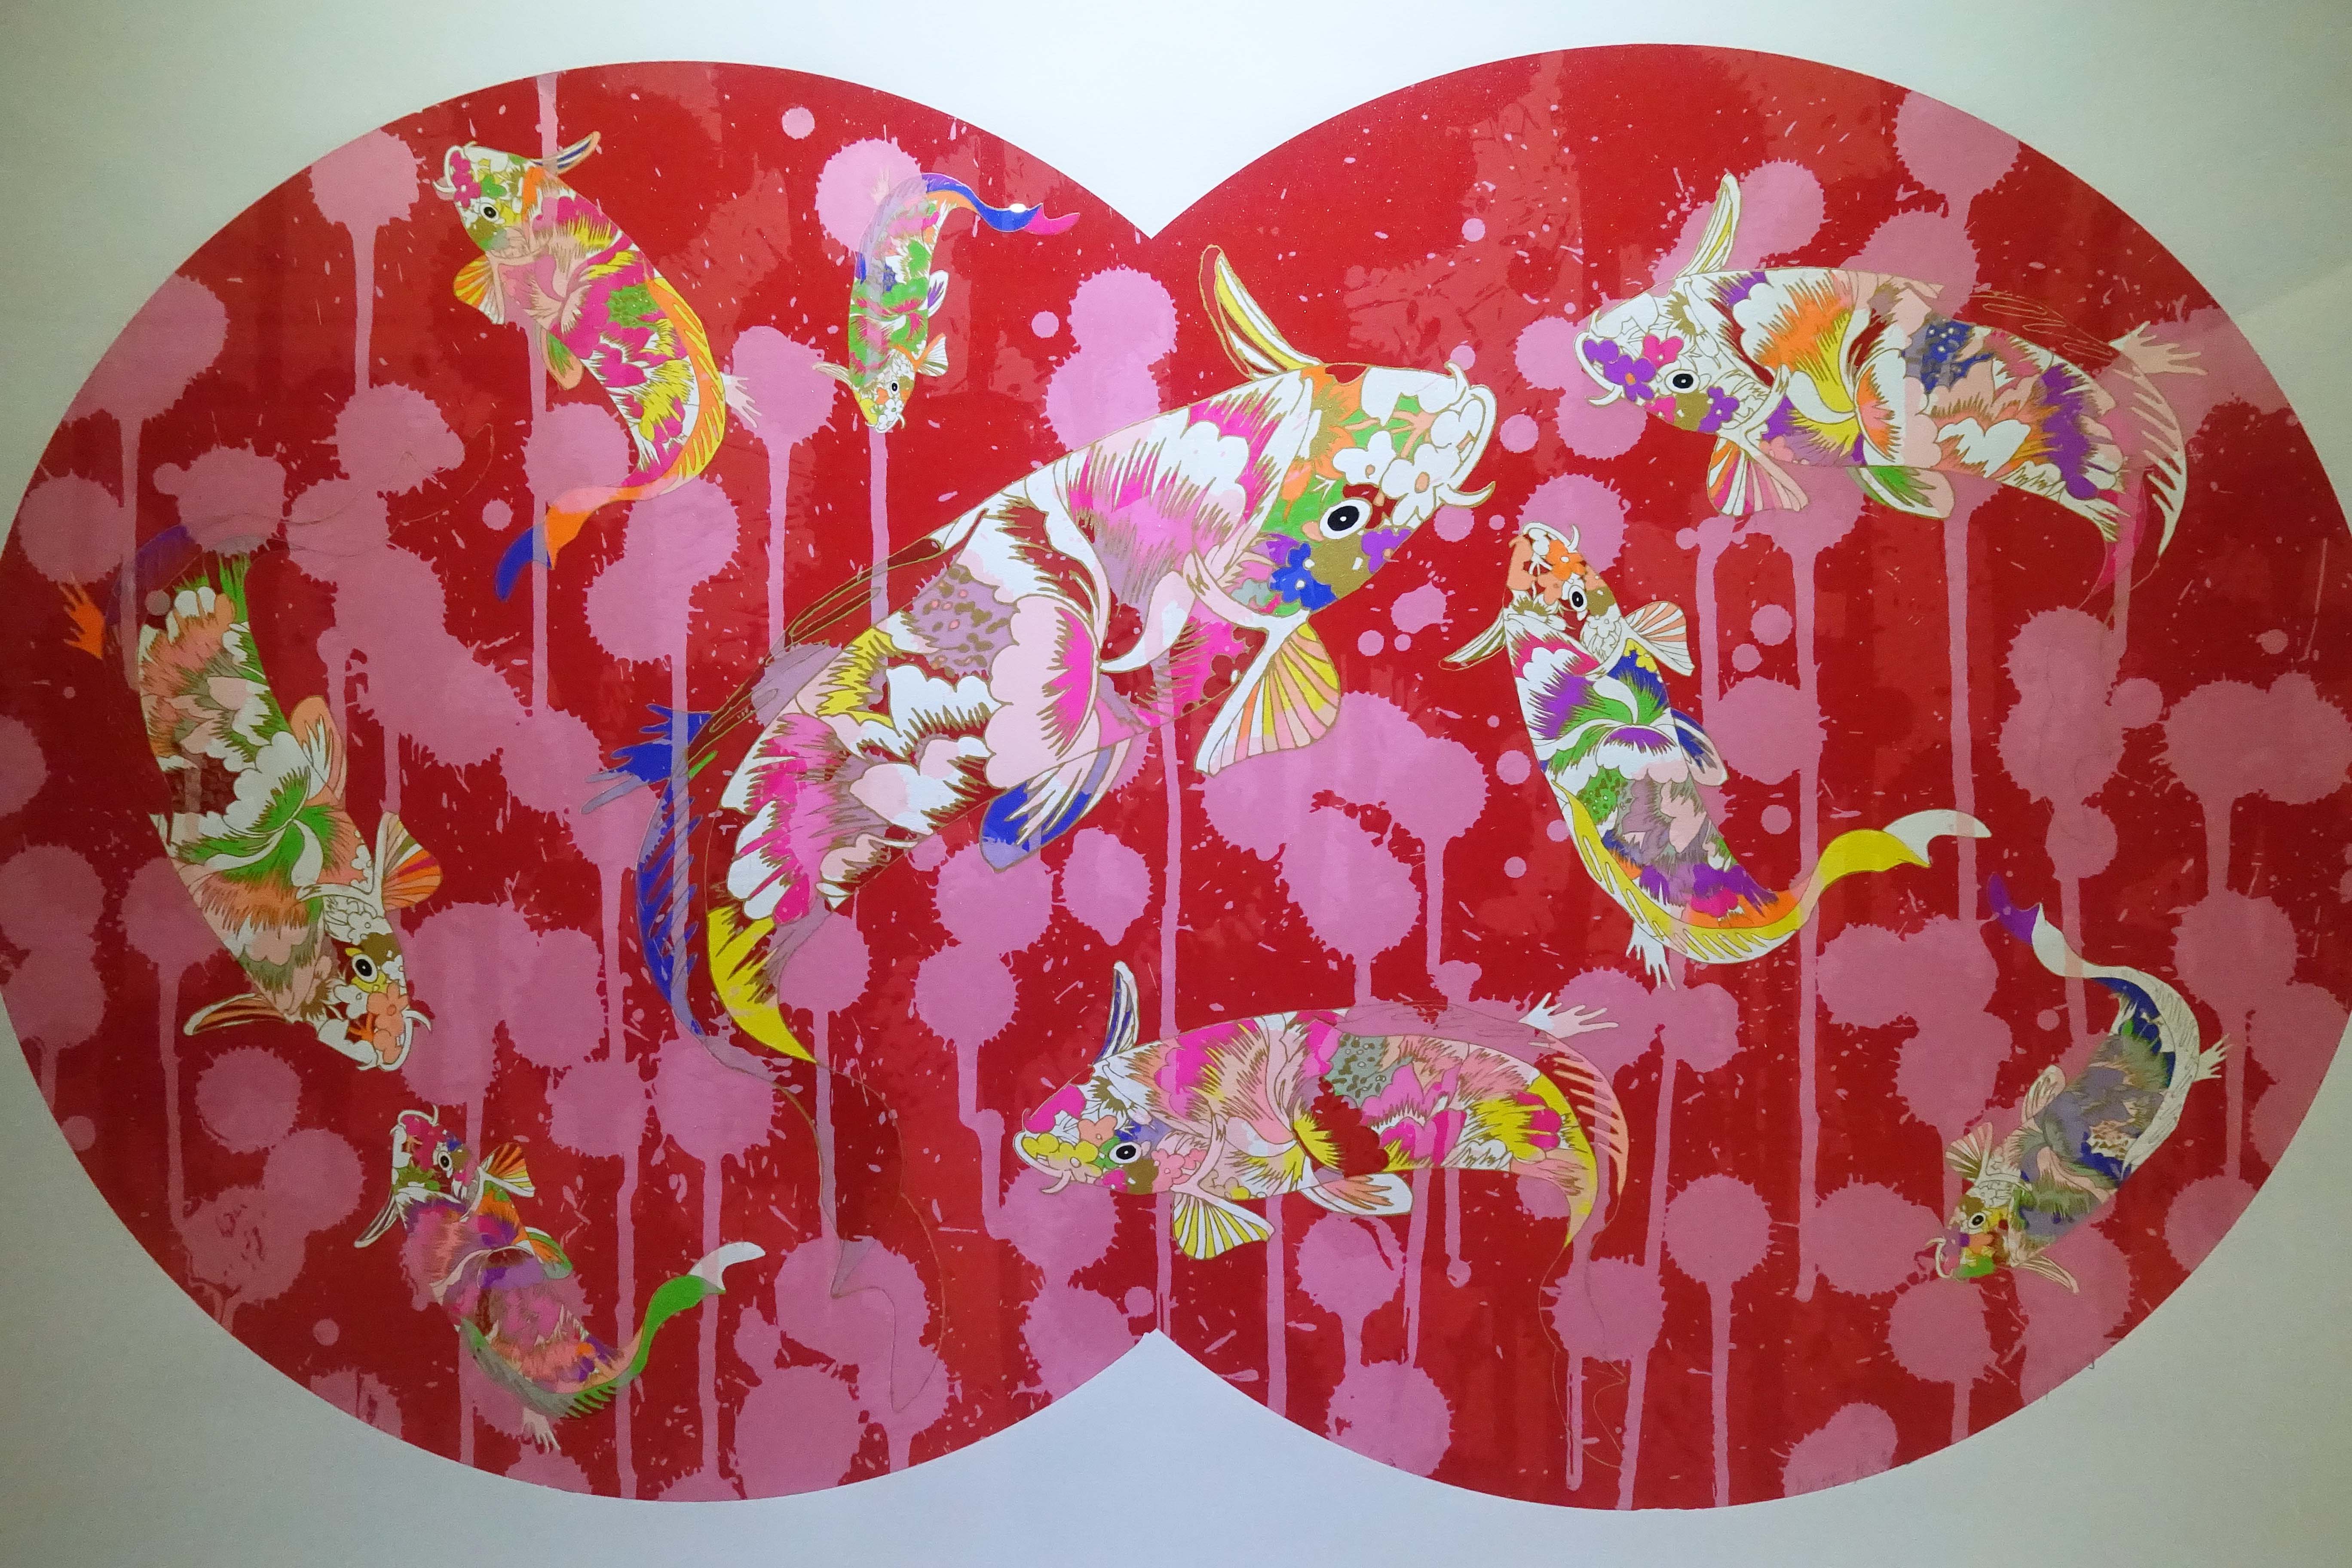 黃椿元，《九魚圖系列-3紅地九魚圖》，絹印版畫，2018。